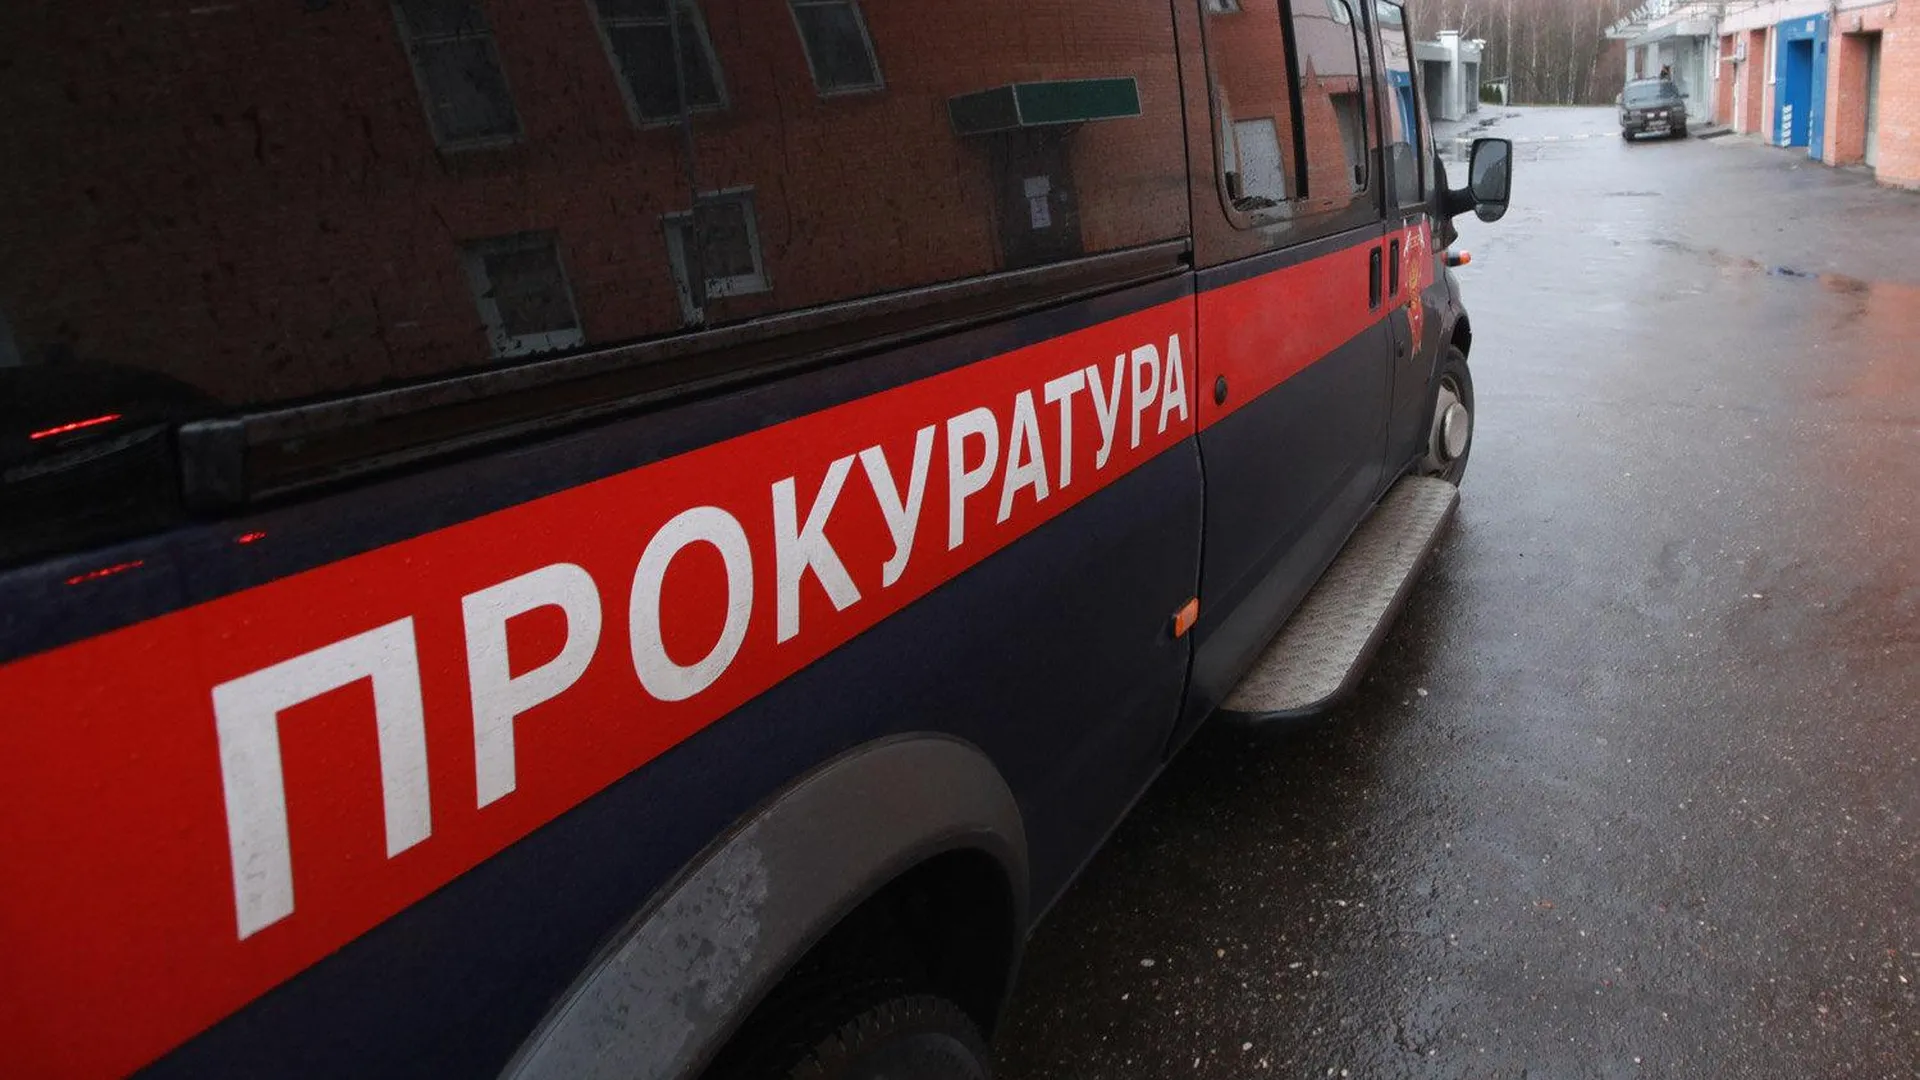 Прокуратура проводит проверку по факту травмирования ребенка из травмата в Пушкине